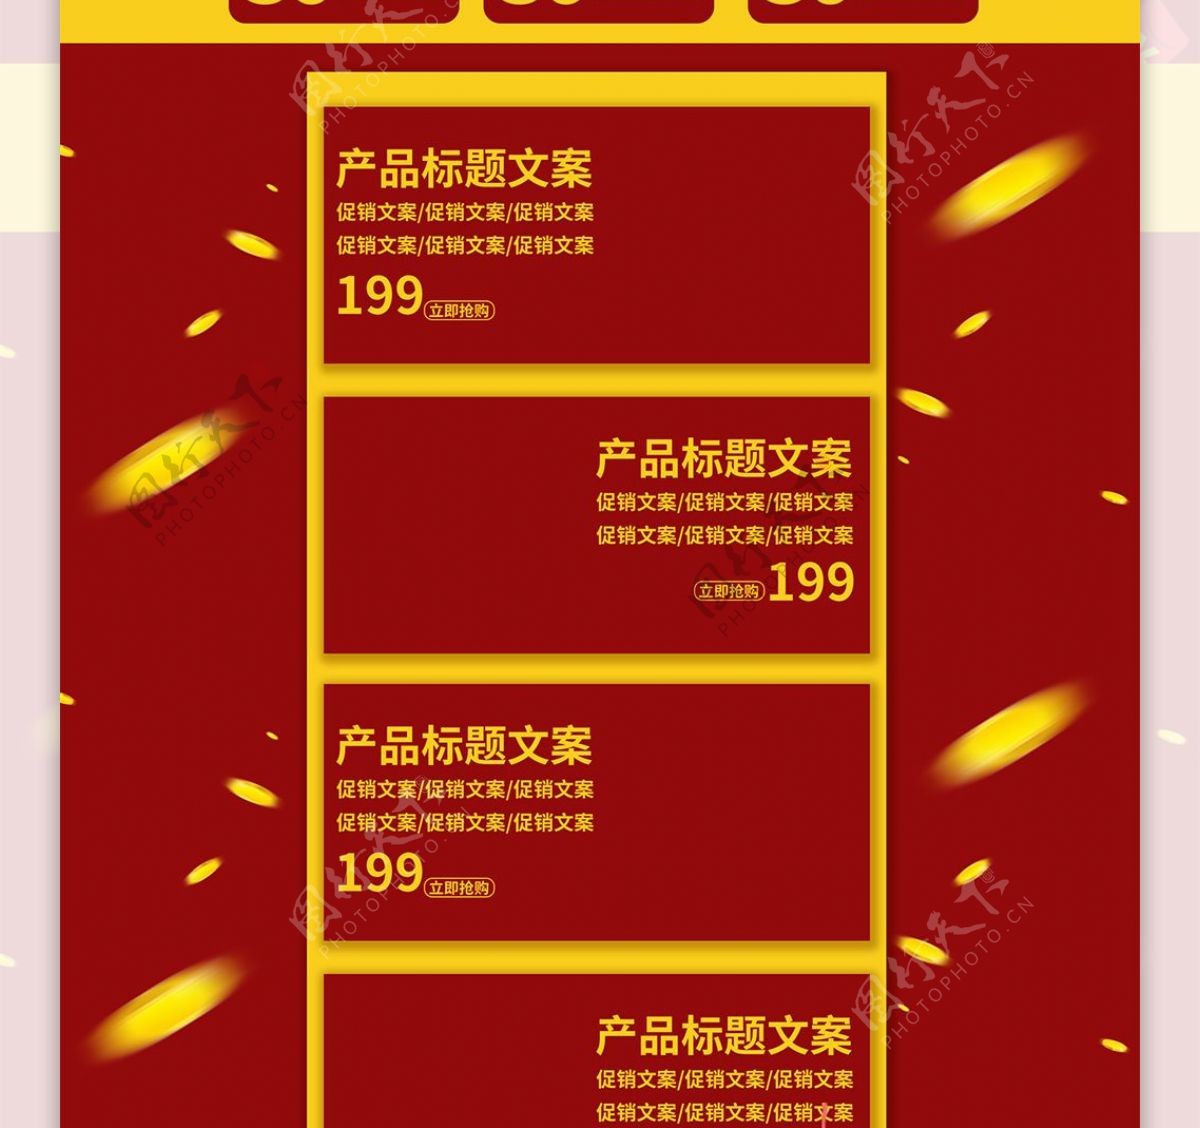 红黄喜庆66聚划算促销电商首页模板